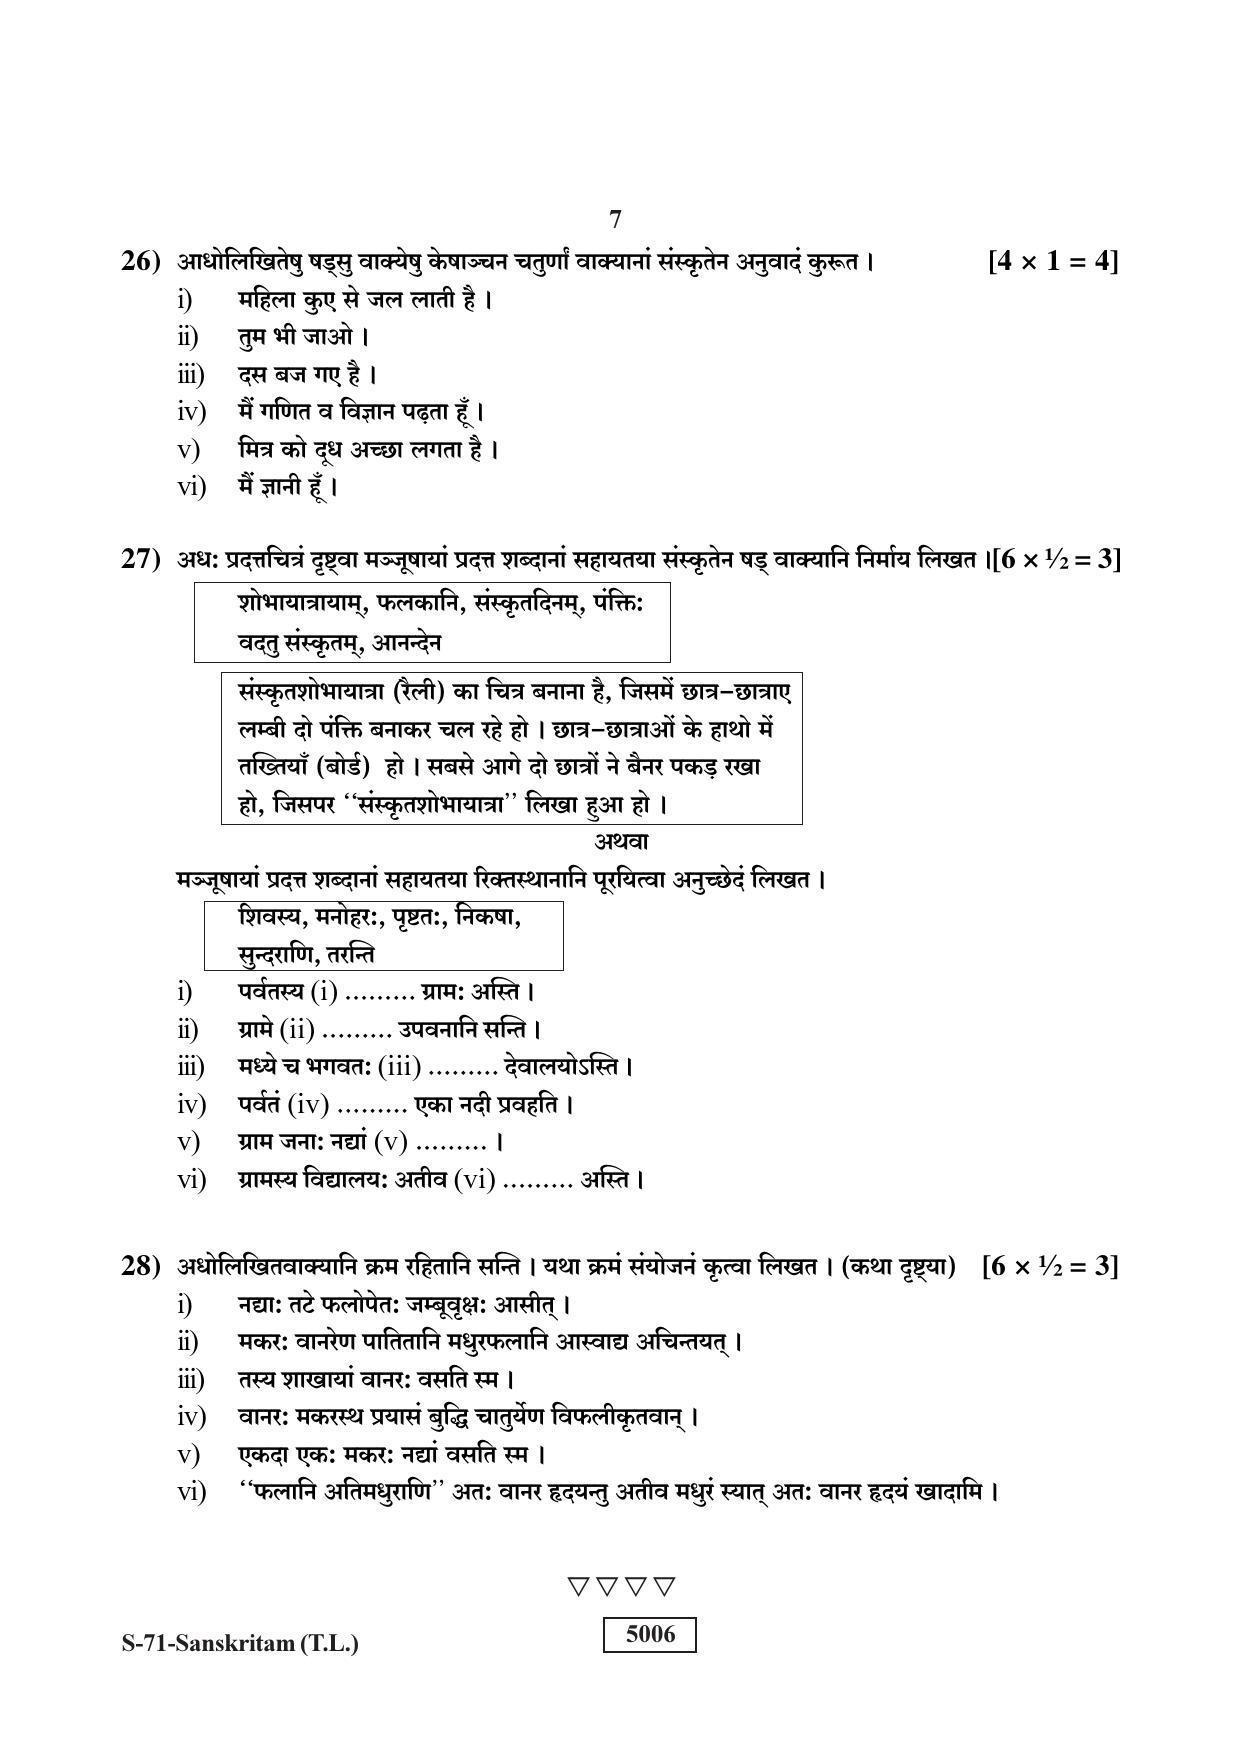 RBSE Class 10 Sanskrit (T.L.) 2019 Question Paper - Page 7